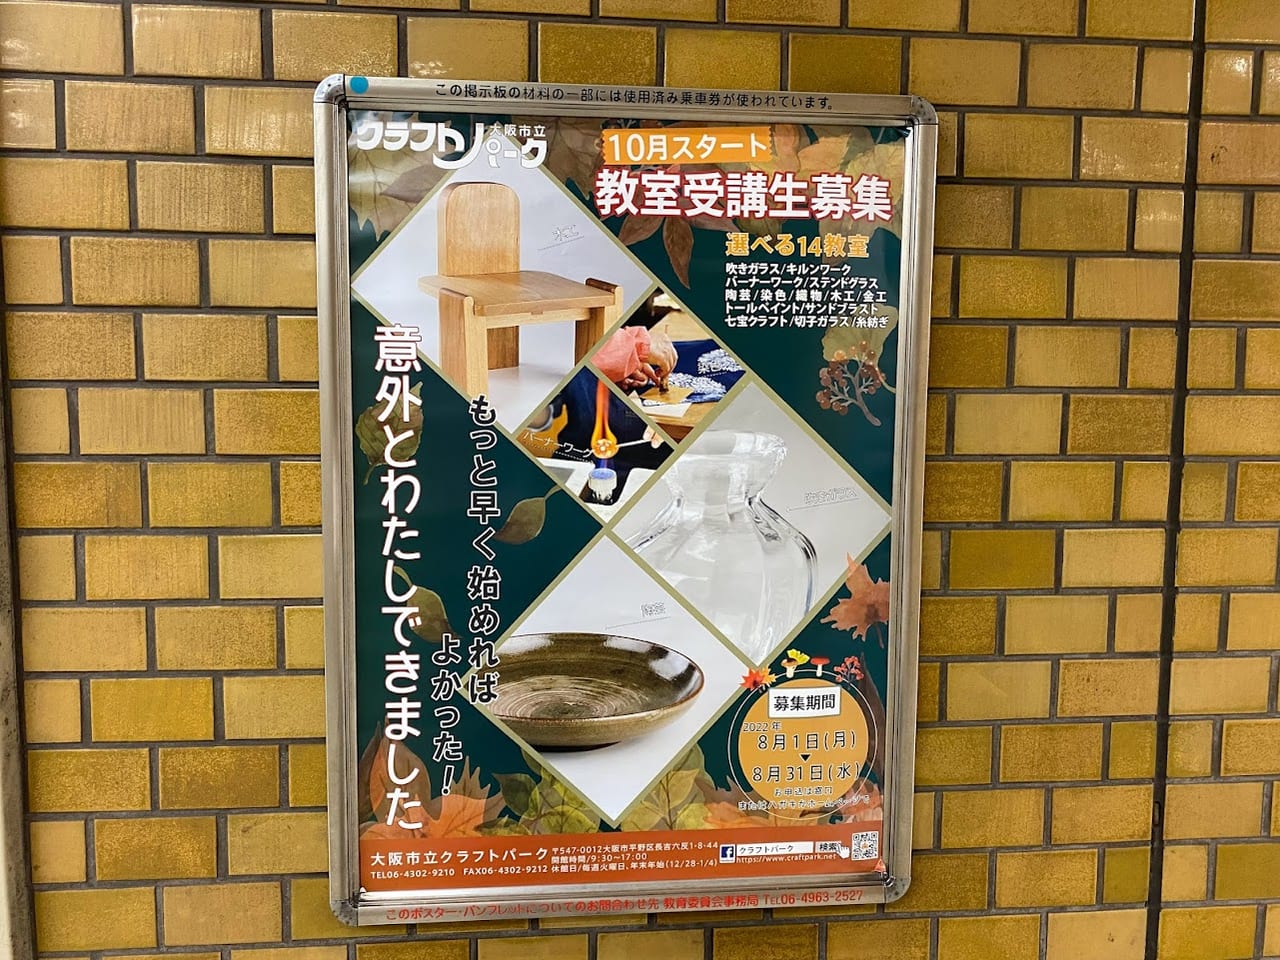 大阪市立クラフトパーク2022年10月スタート受講生募集ポスター